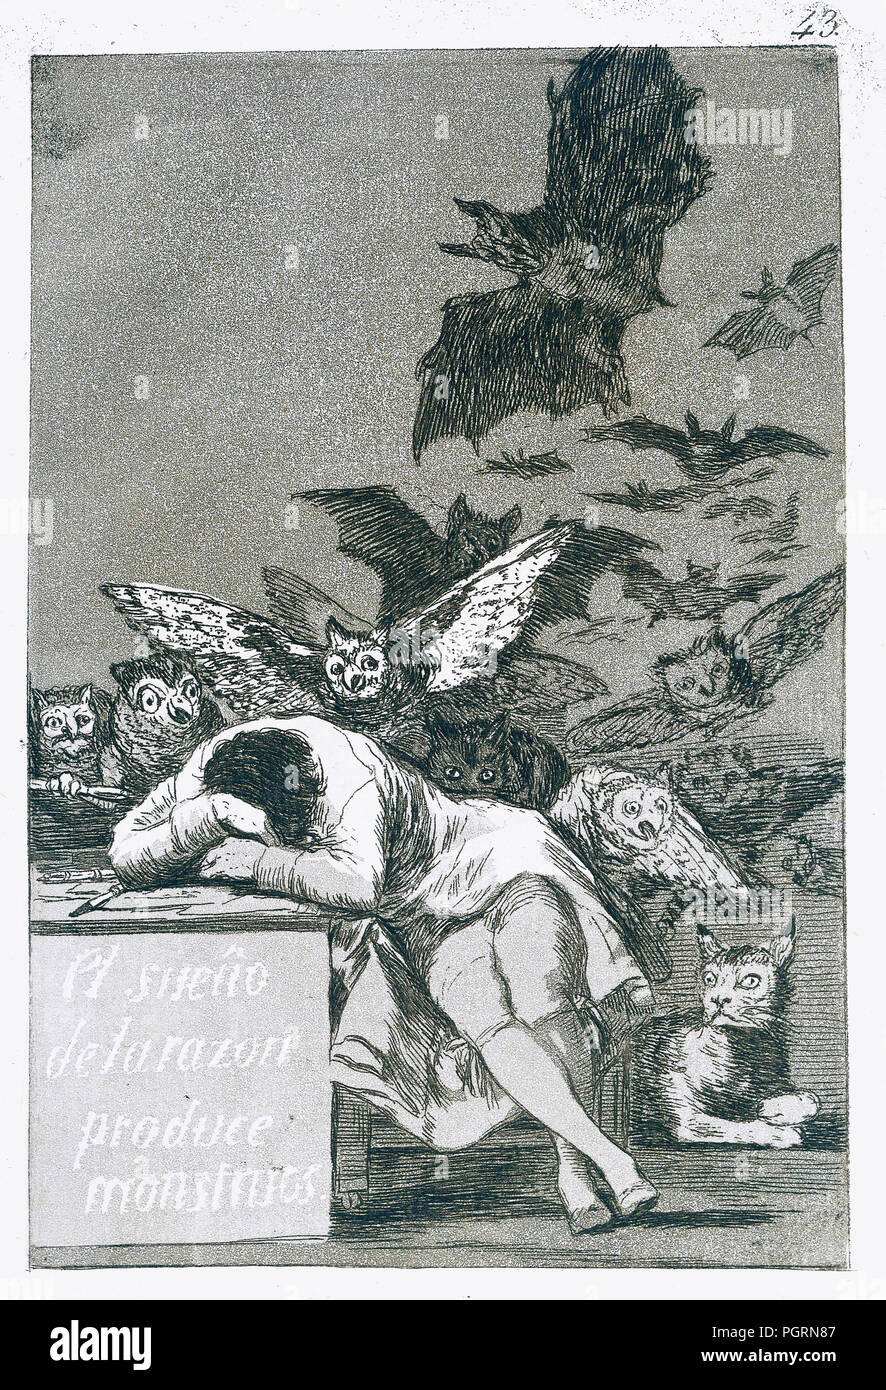 El sueño de la razón produce monstruos, el sueño de la razón produce monstruos. Por Francisco de Goya, número 43 de su serie Los caprichos Foto de stock